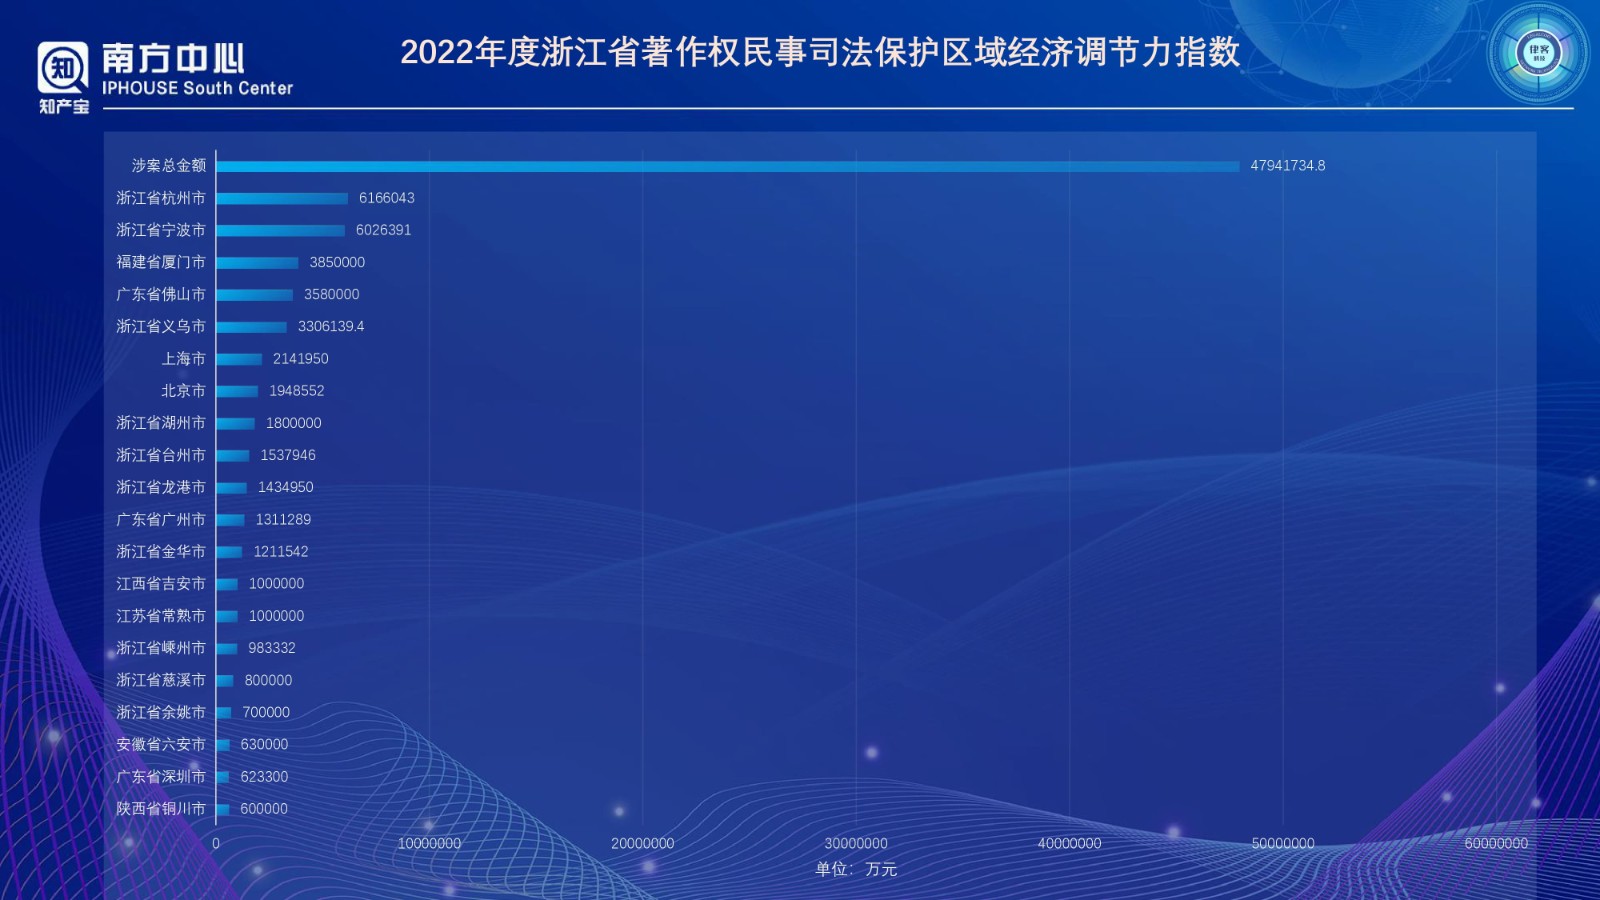 浙江省版权登记数据分析报告（2022年度）PPT-0410改_page-0013.jpg